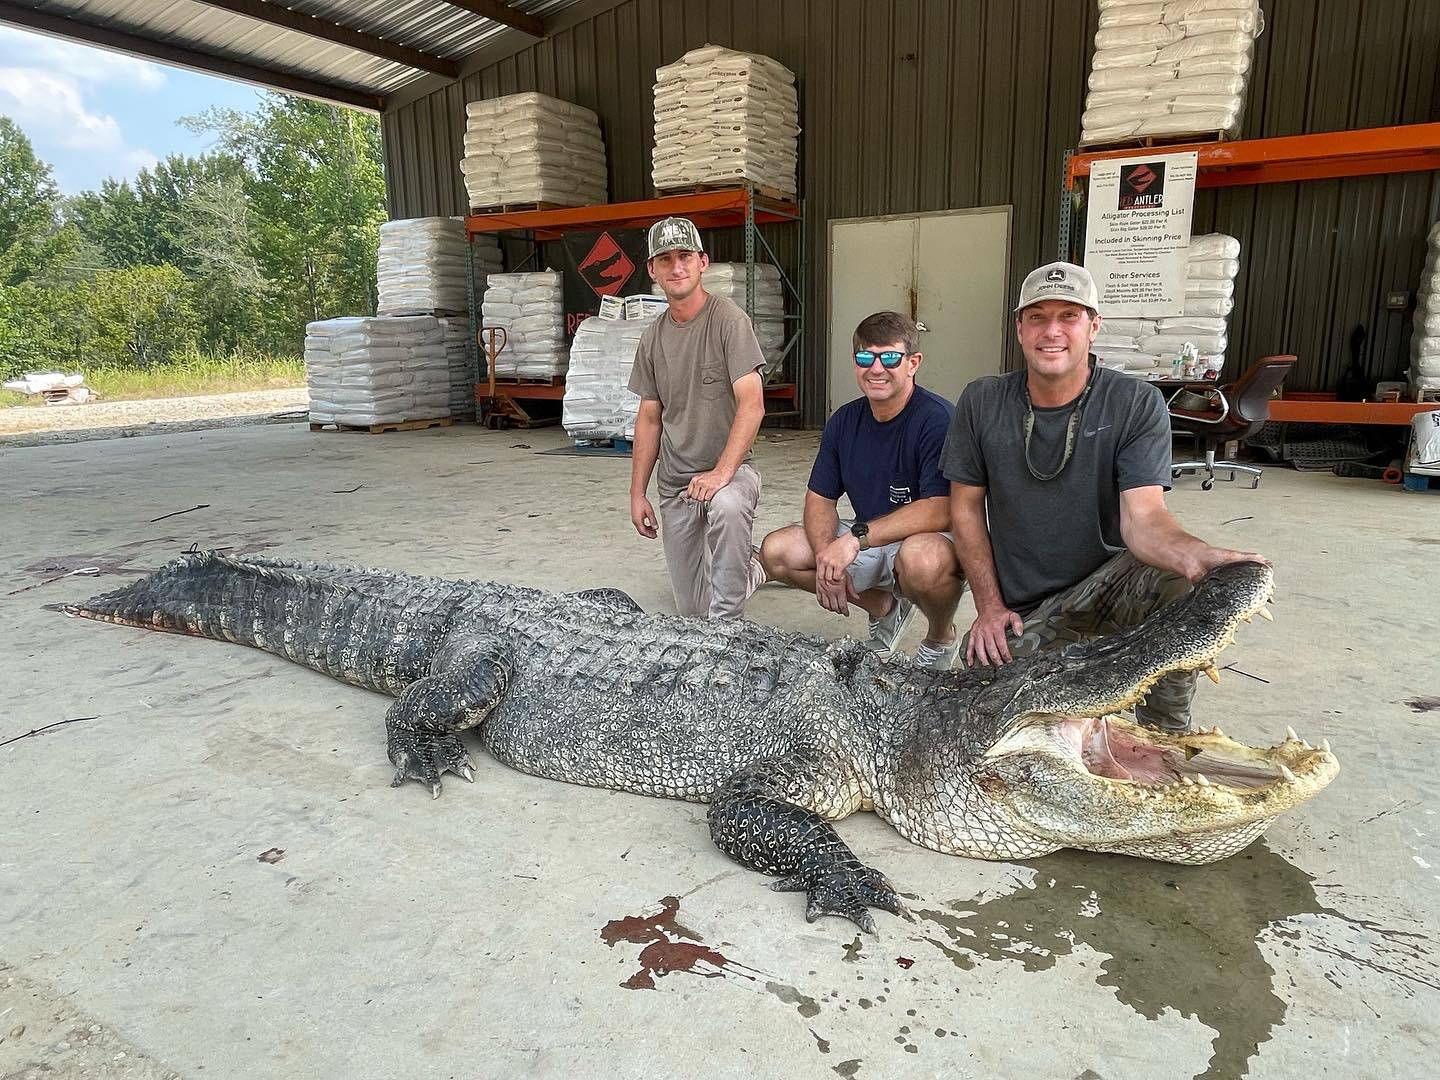 Ulovili čudovišnog aligatora i postavili rekord. Ima više od 4 metra i 360 kila: 'Jedu nam pse'